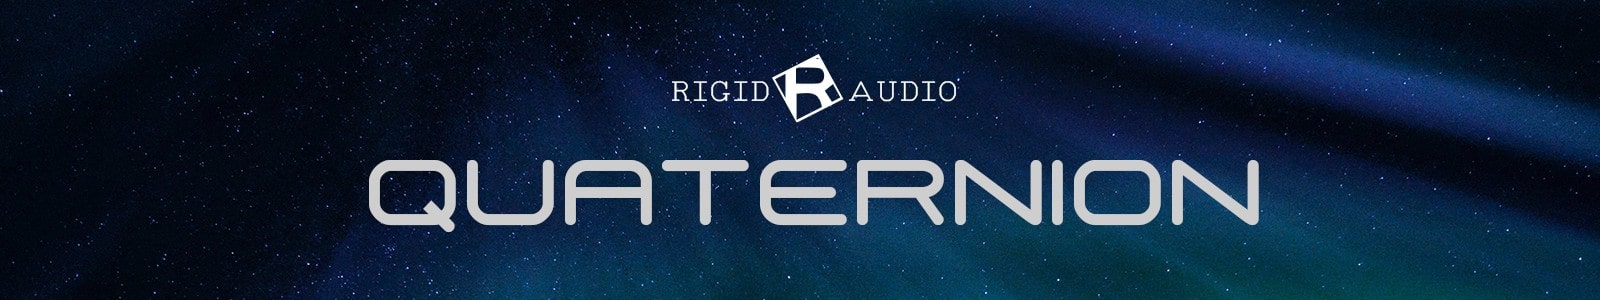 Rigid Audio Quarternion